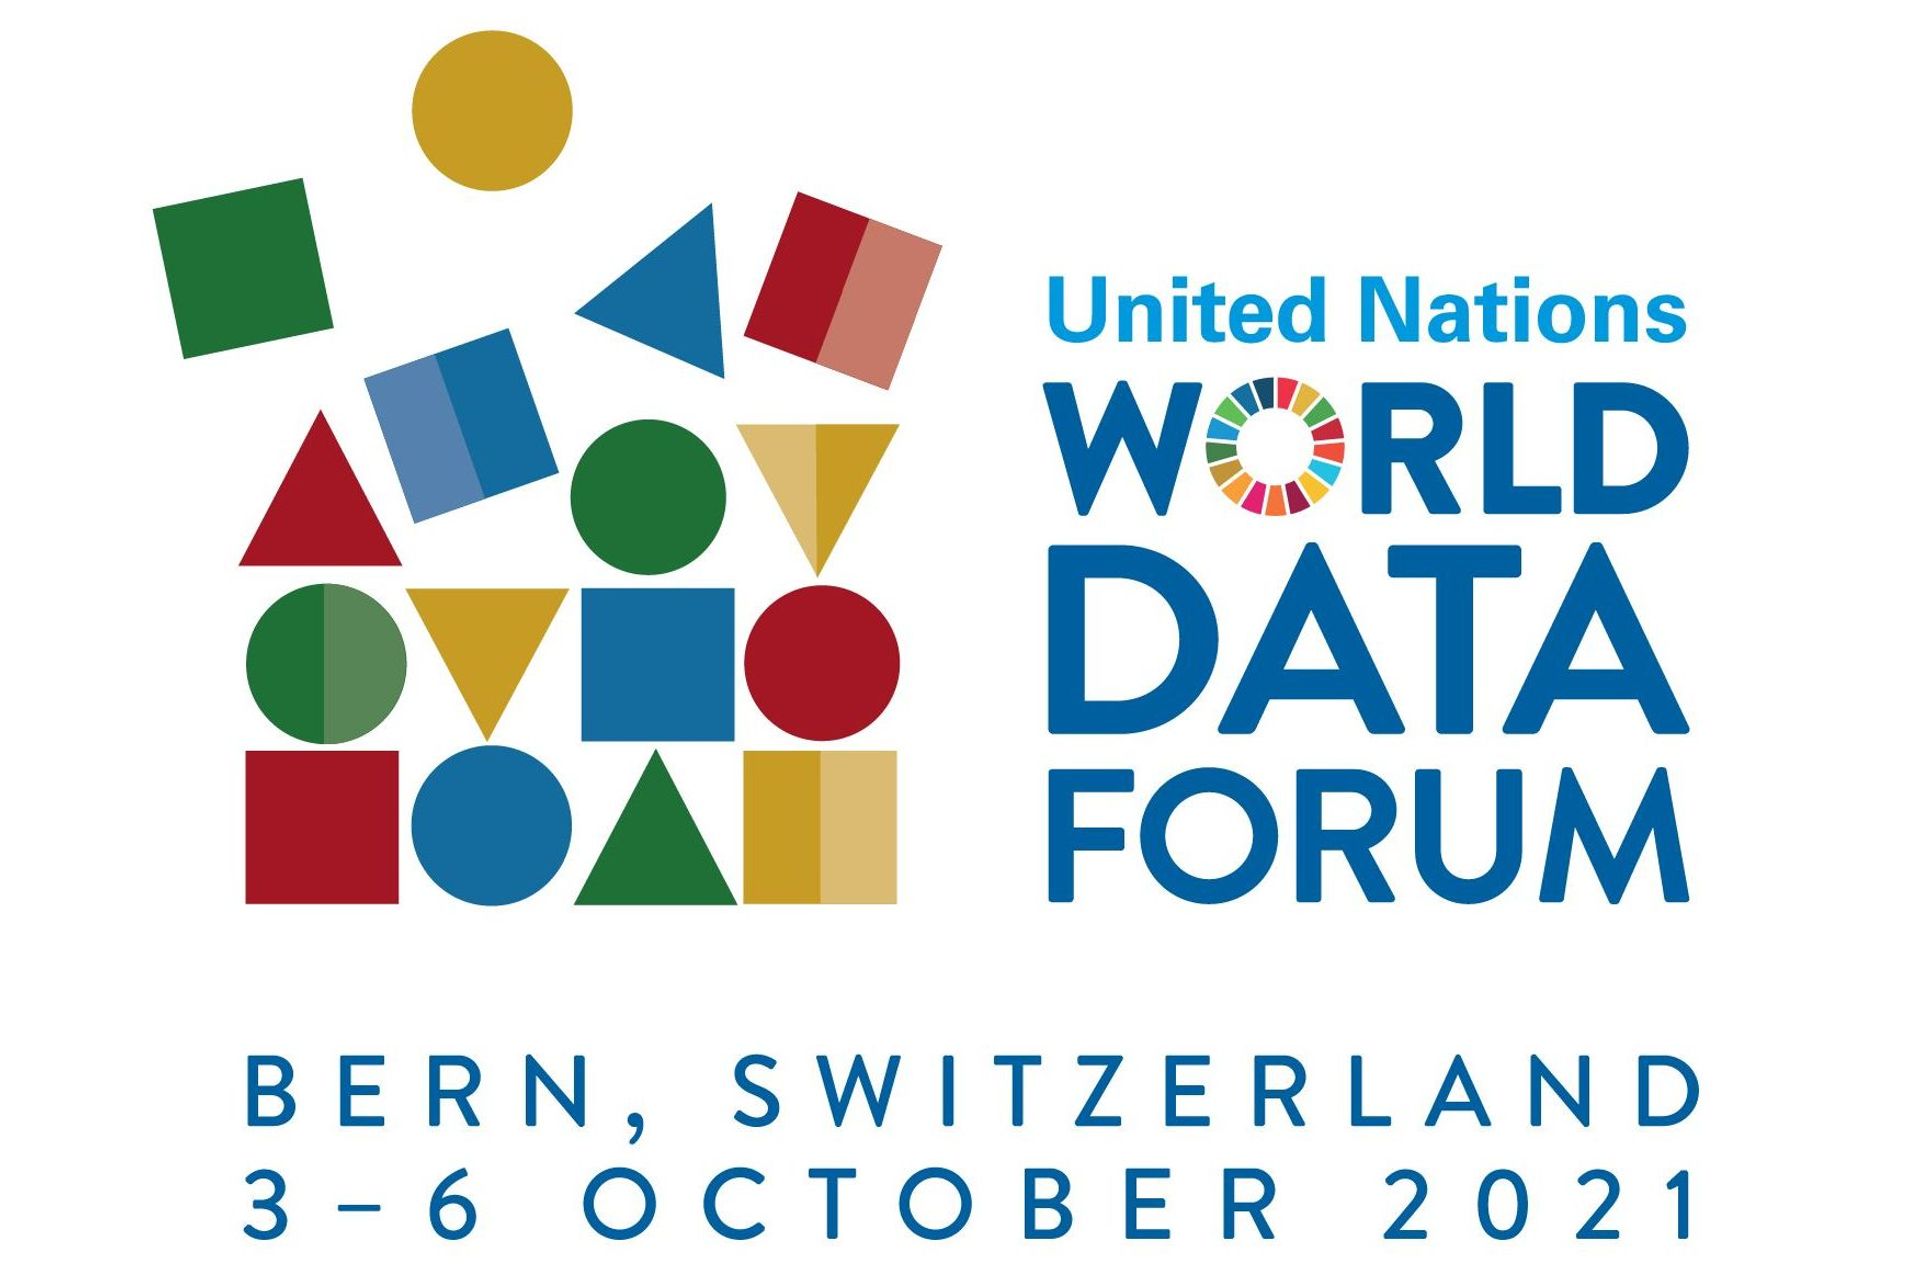 Il logotipo dello United Nations World Data Forum 2021